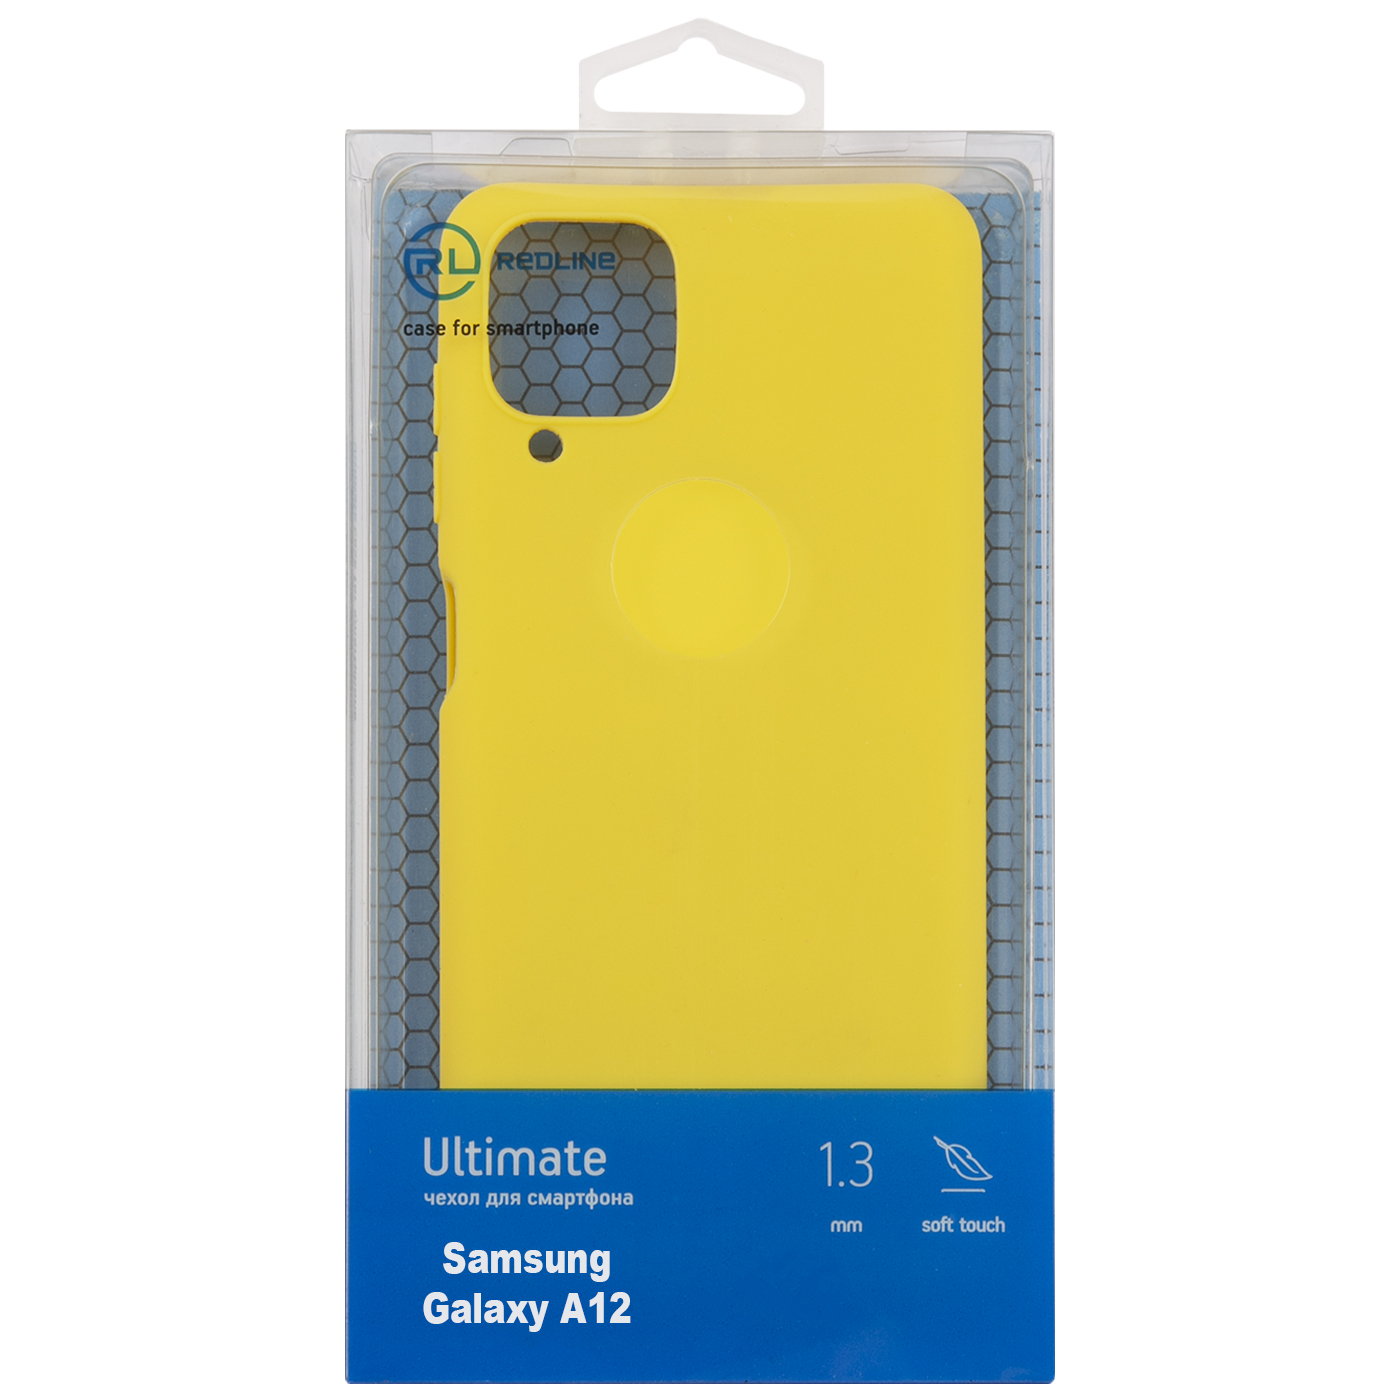 Чехол защитный Red Line Ultimate для Samsung Galaxy A12, желтый УТ000023601 чехол защитный red line ultimate для vivo y19 y5s u3 u20 z5i желтый ут000022523